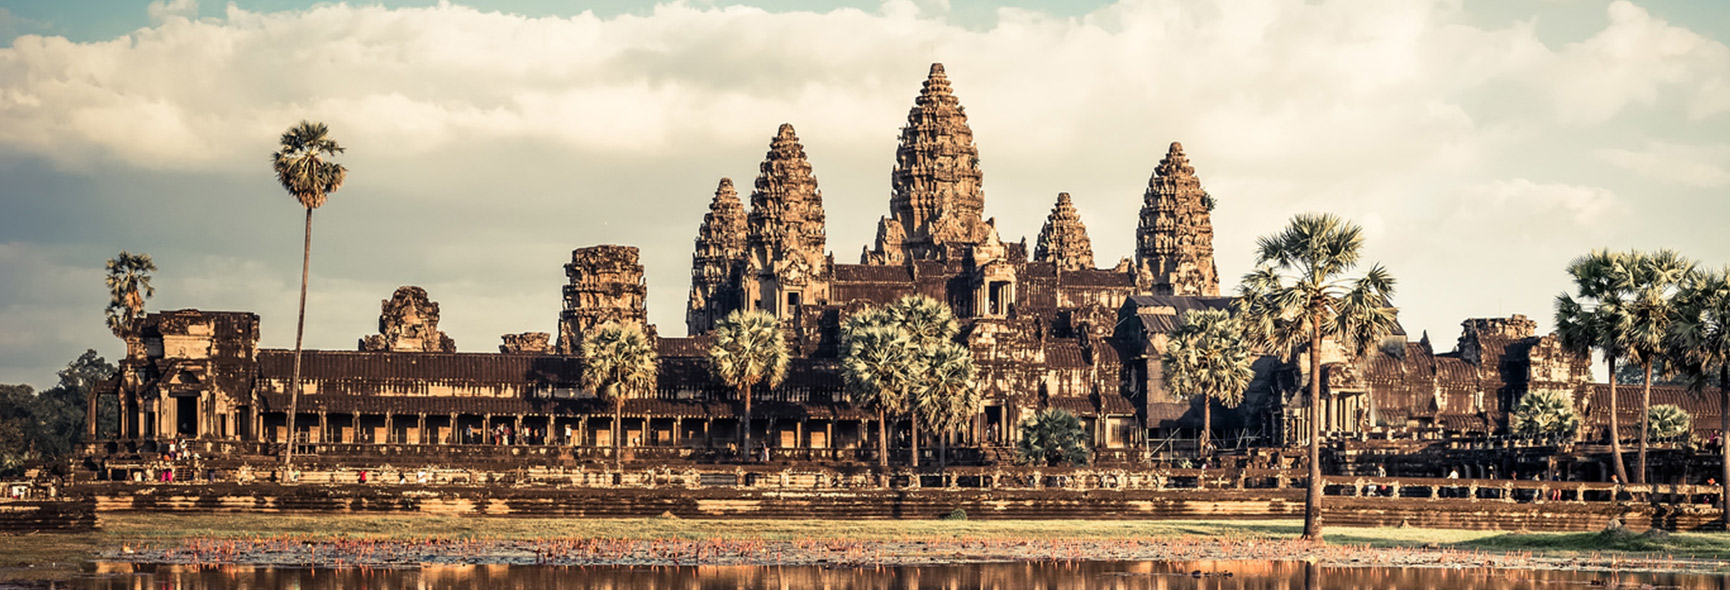 cambodge angkor